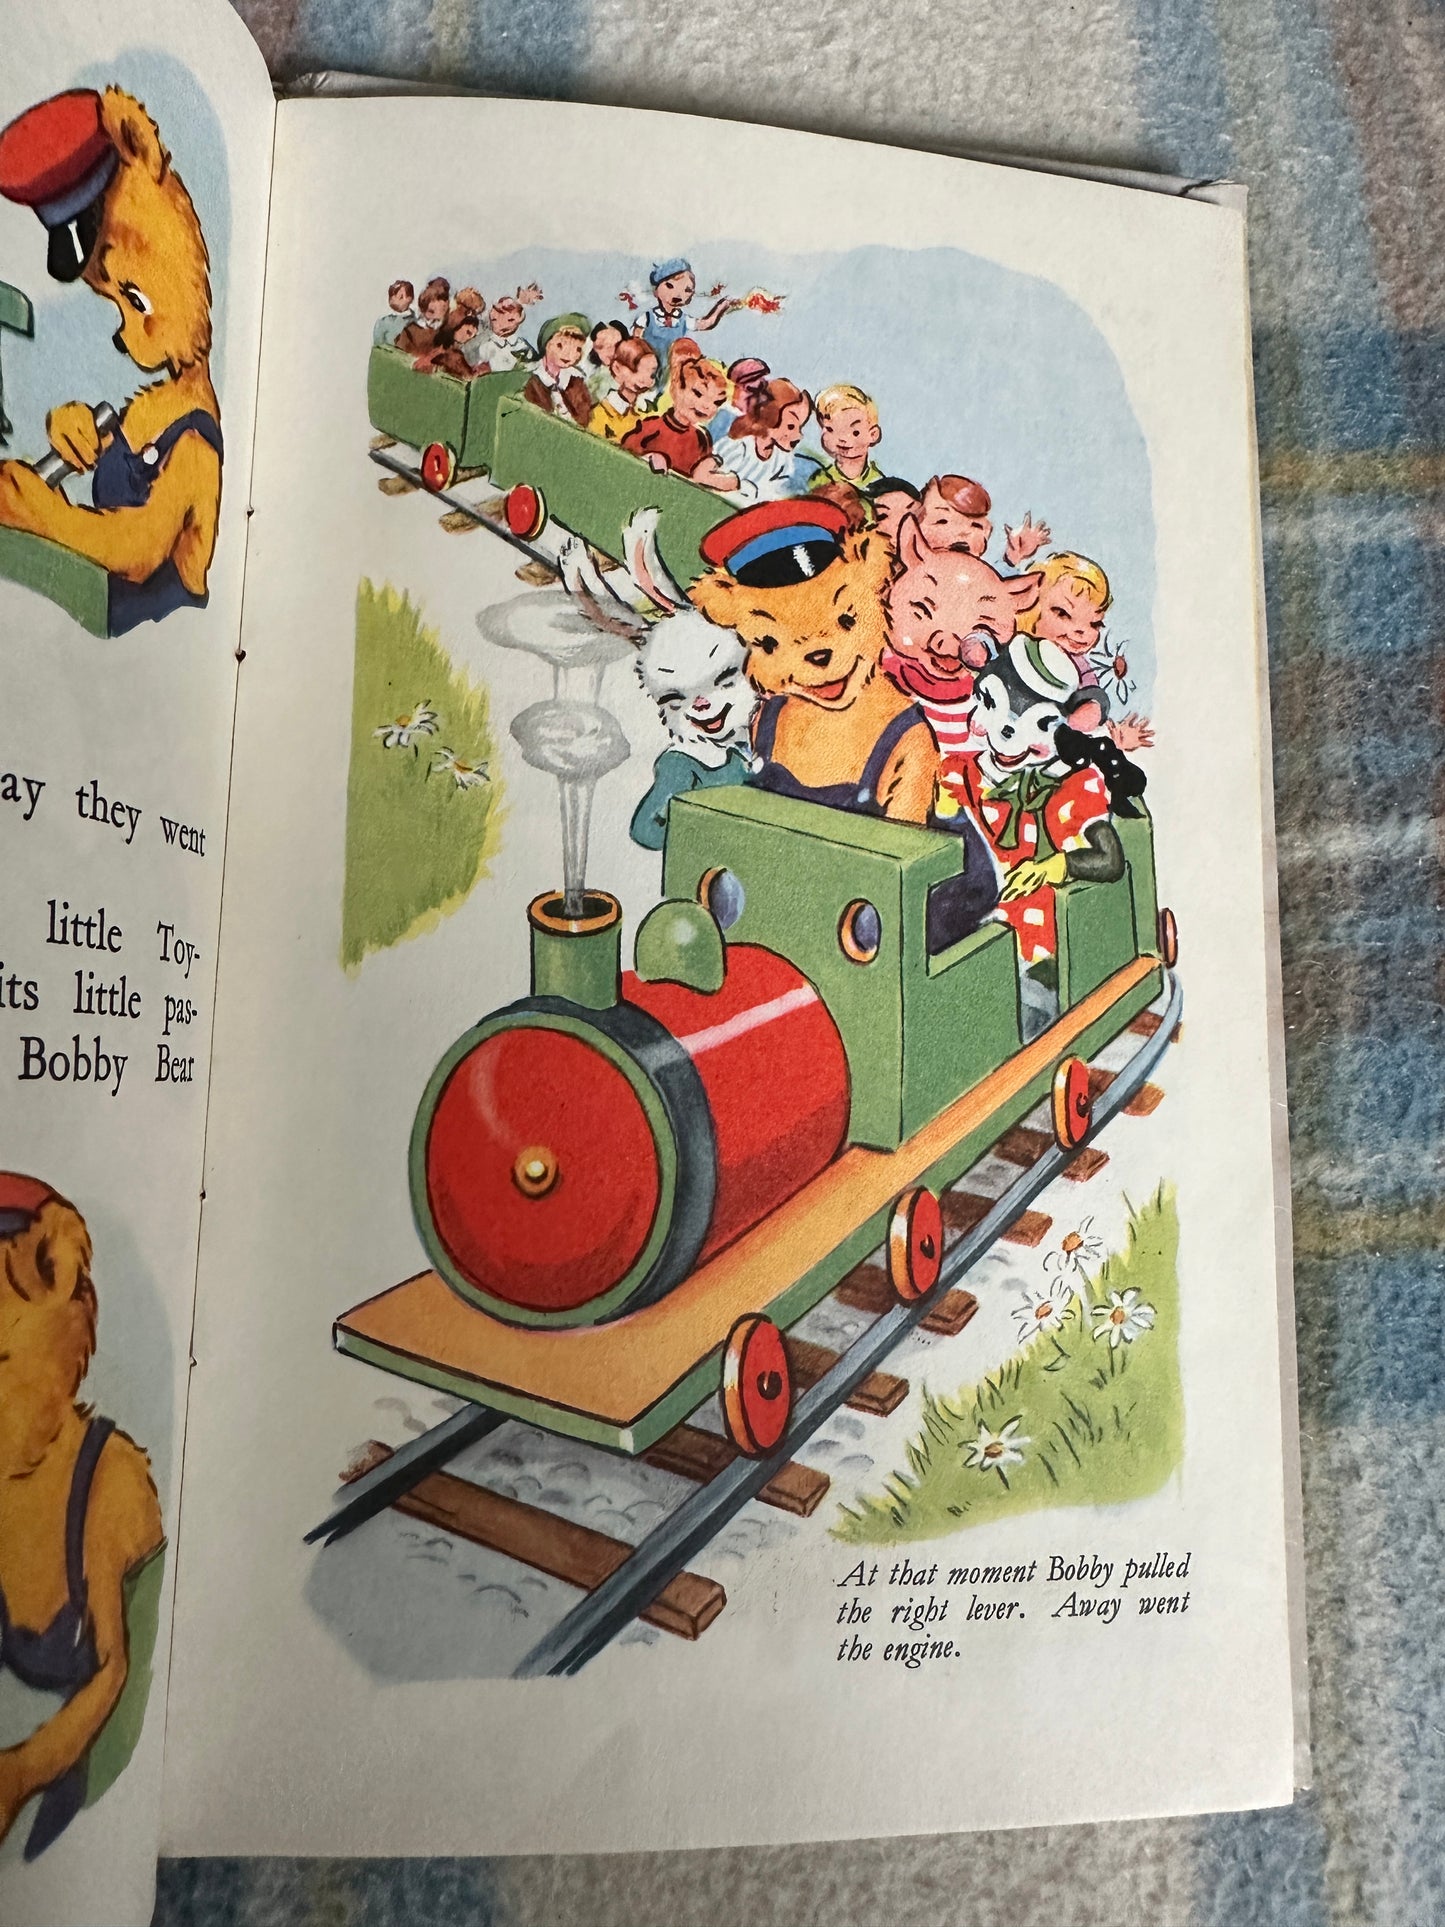 1968*1st* The Bobby Bear Express - Arthur Groom(Little Poppet Series) Dean & Son Ltd